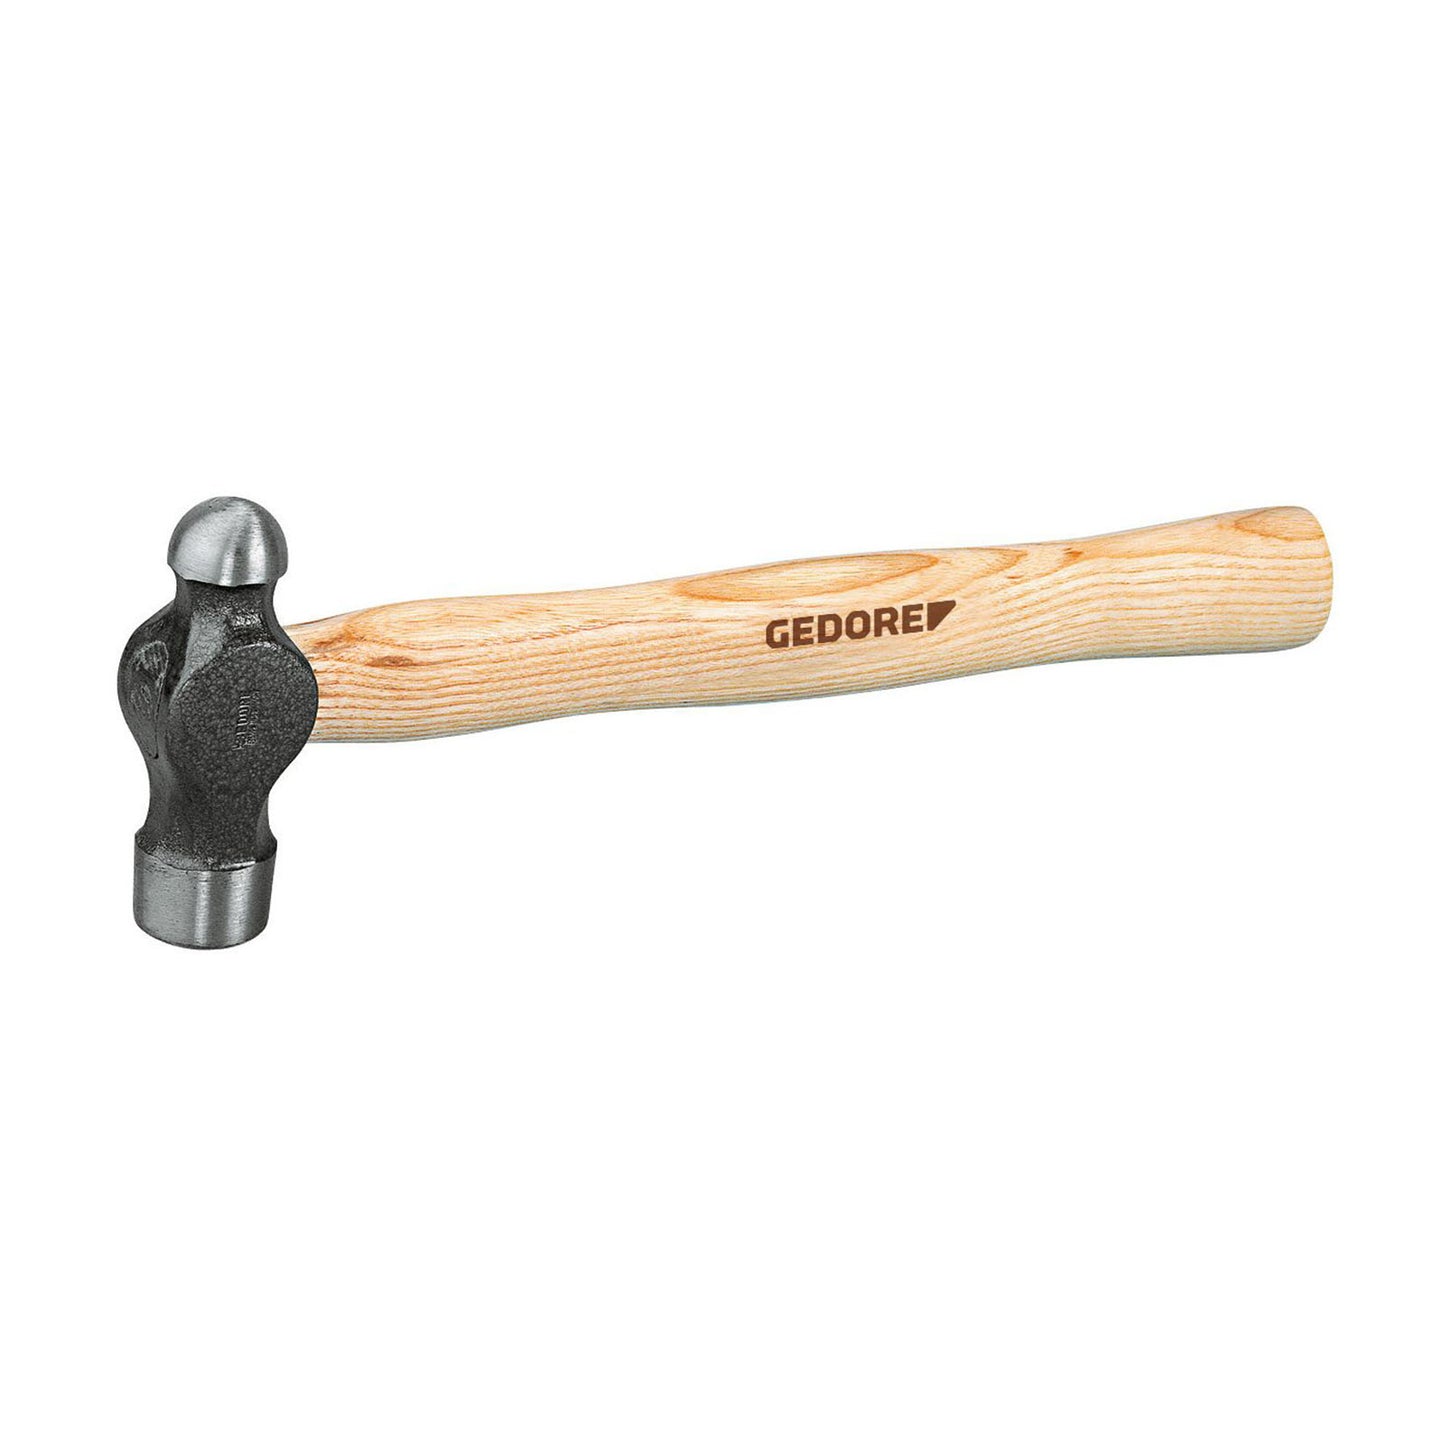 GEDORE 8601 1 - Mechanical hammer, 1LBS (6764460)